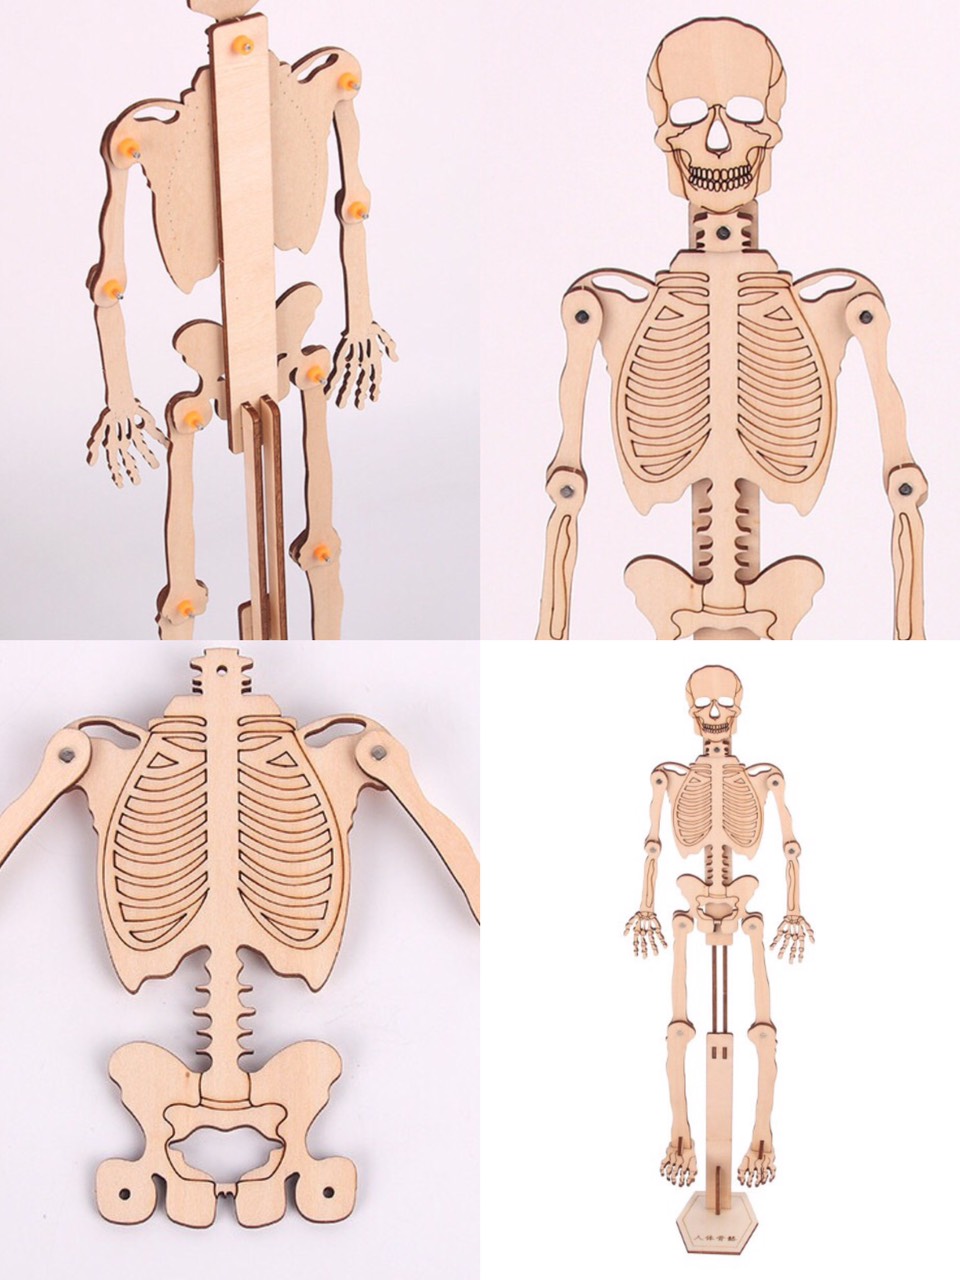 Đồ chơi khoa học Stem gỗ an toàn với trẻ,bộ đồ chơi lắp ráp giúp bé hiểu về cấu tạo hệ cơ xương